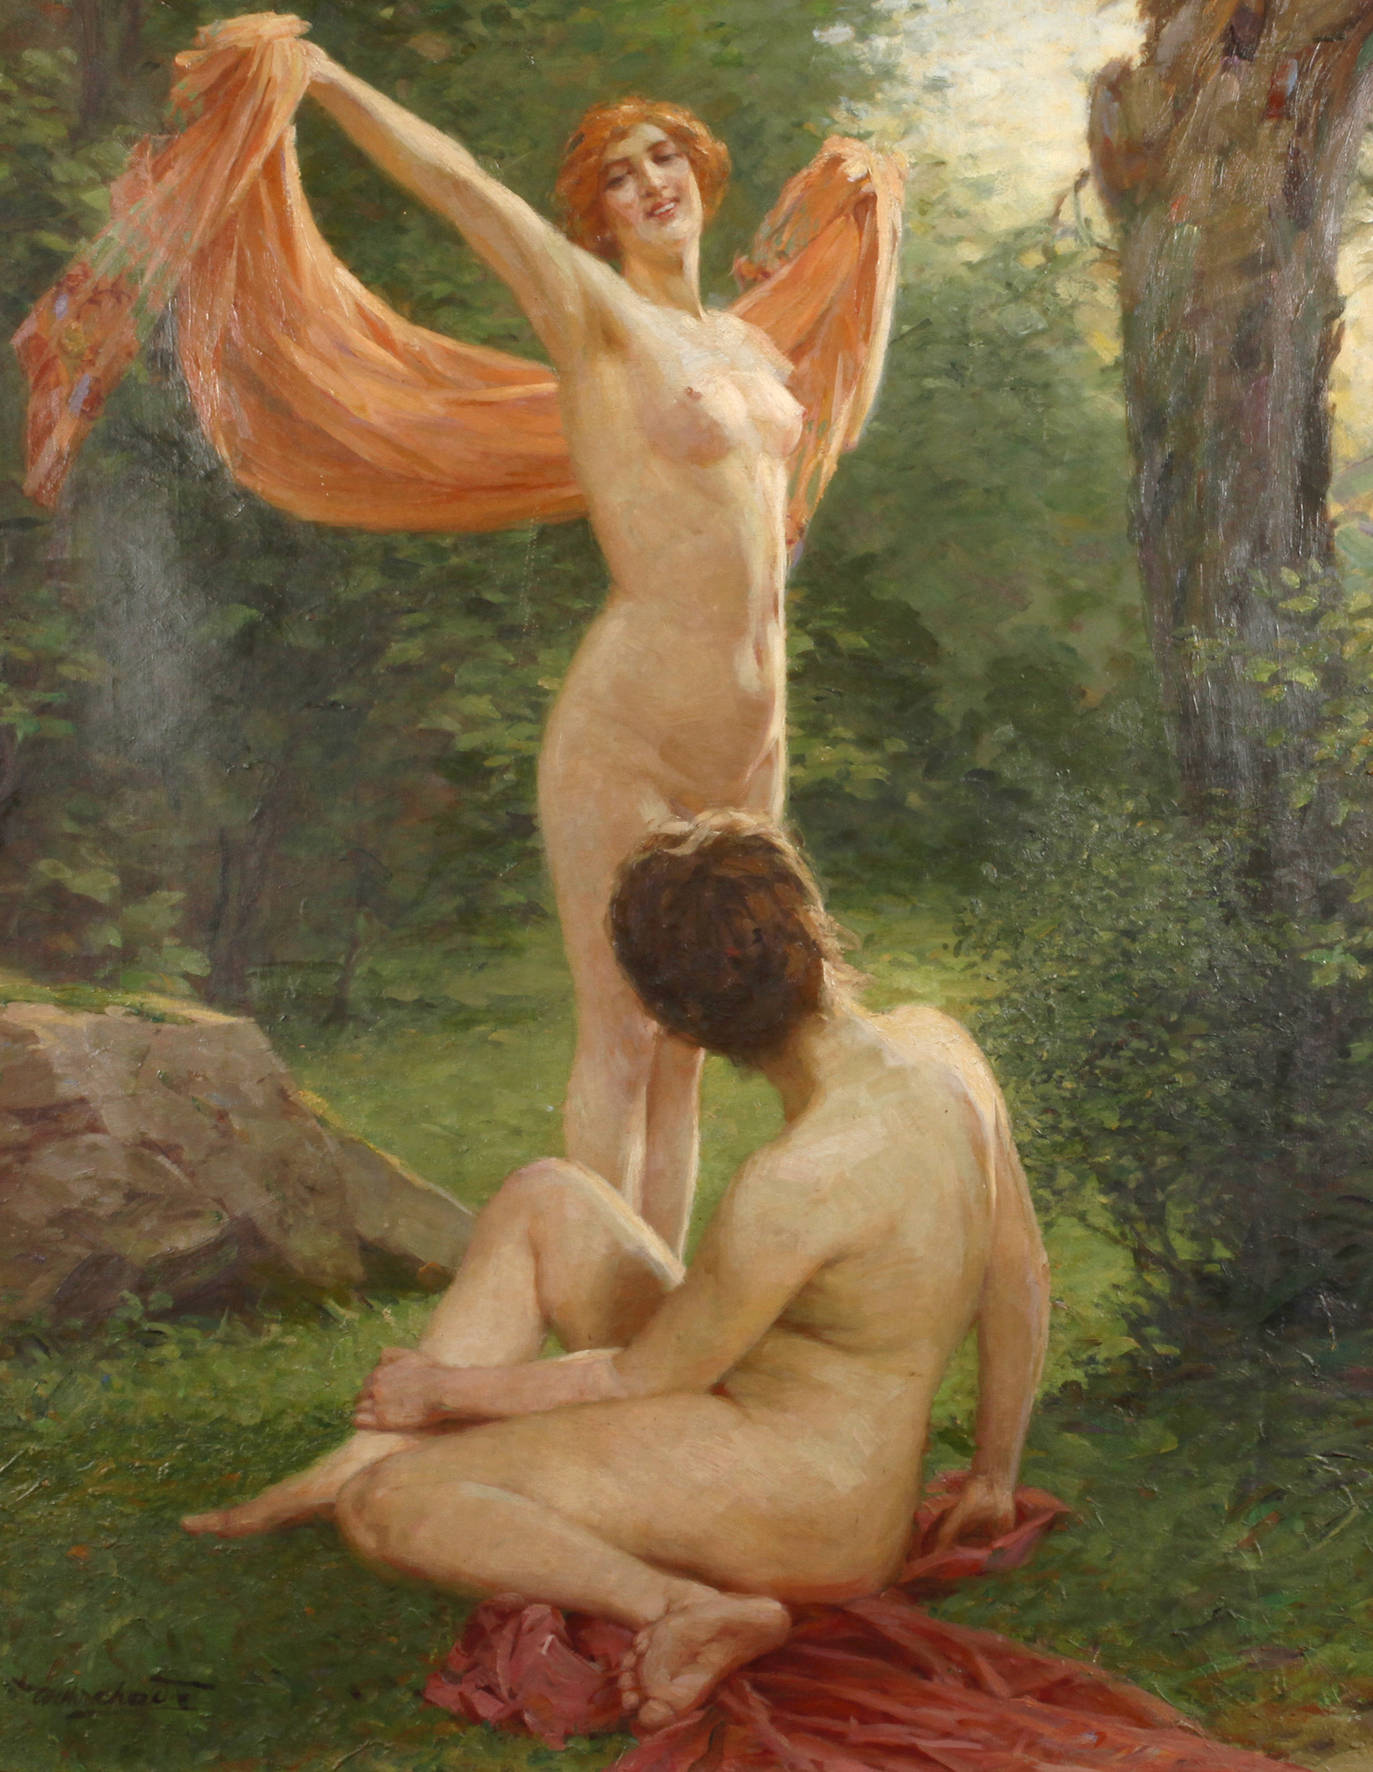 Wilhelm Schade, ”Frei” – Zwei Mädchenakte im Wald